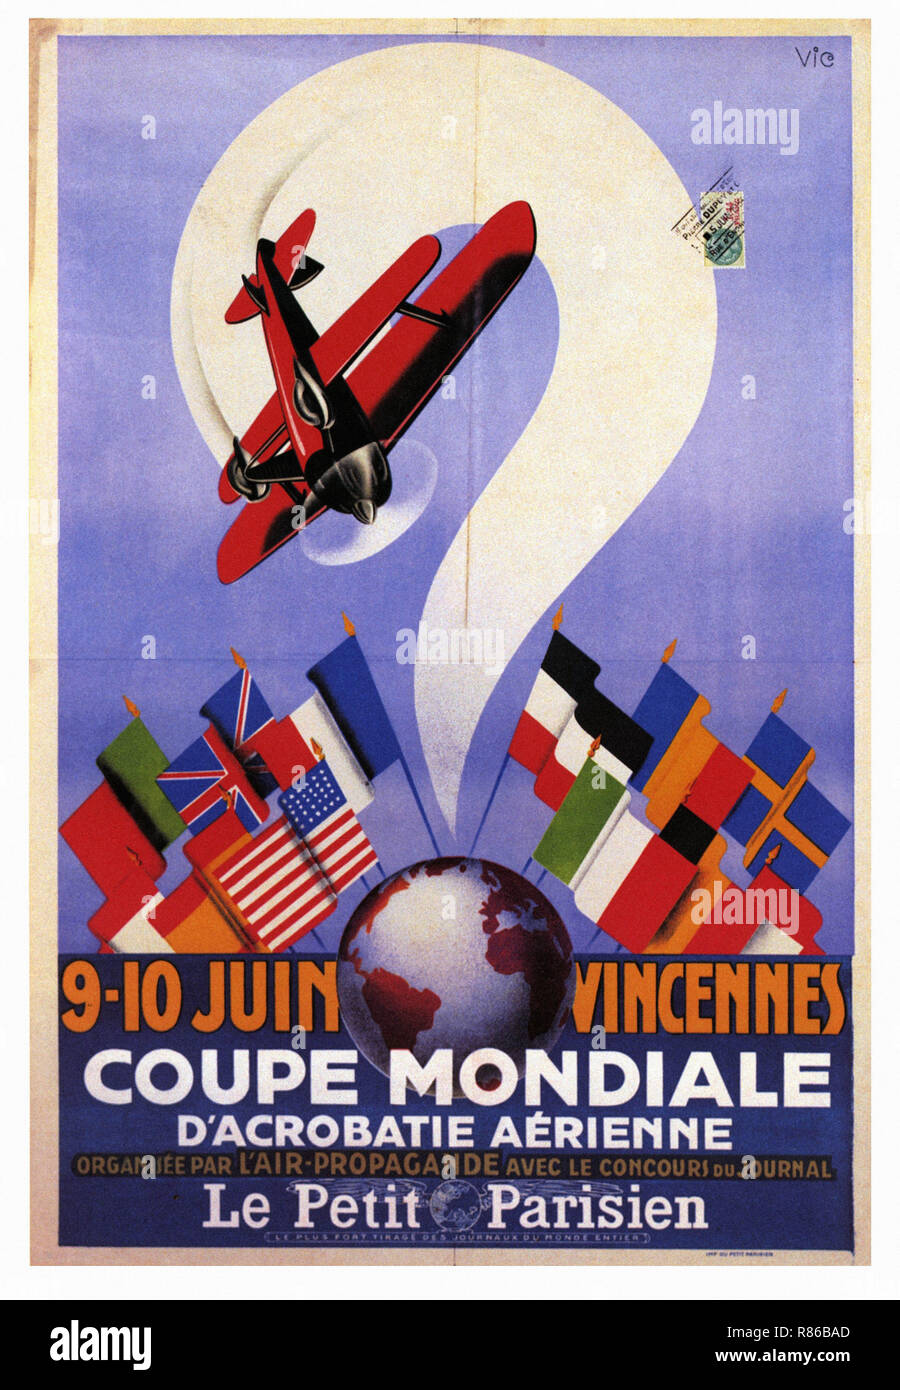 Coupé Mondiale d'acrobatie aerienne Vincennes 1934 - Affiche publicitaire ancienne Banque D'Images